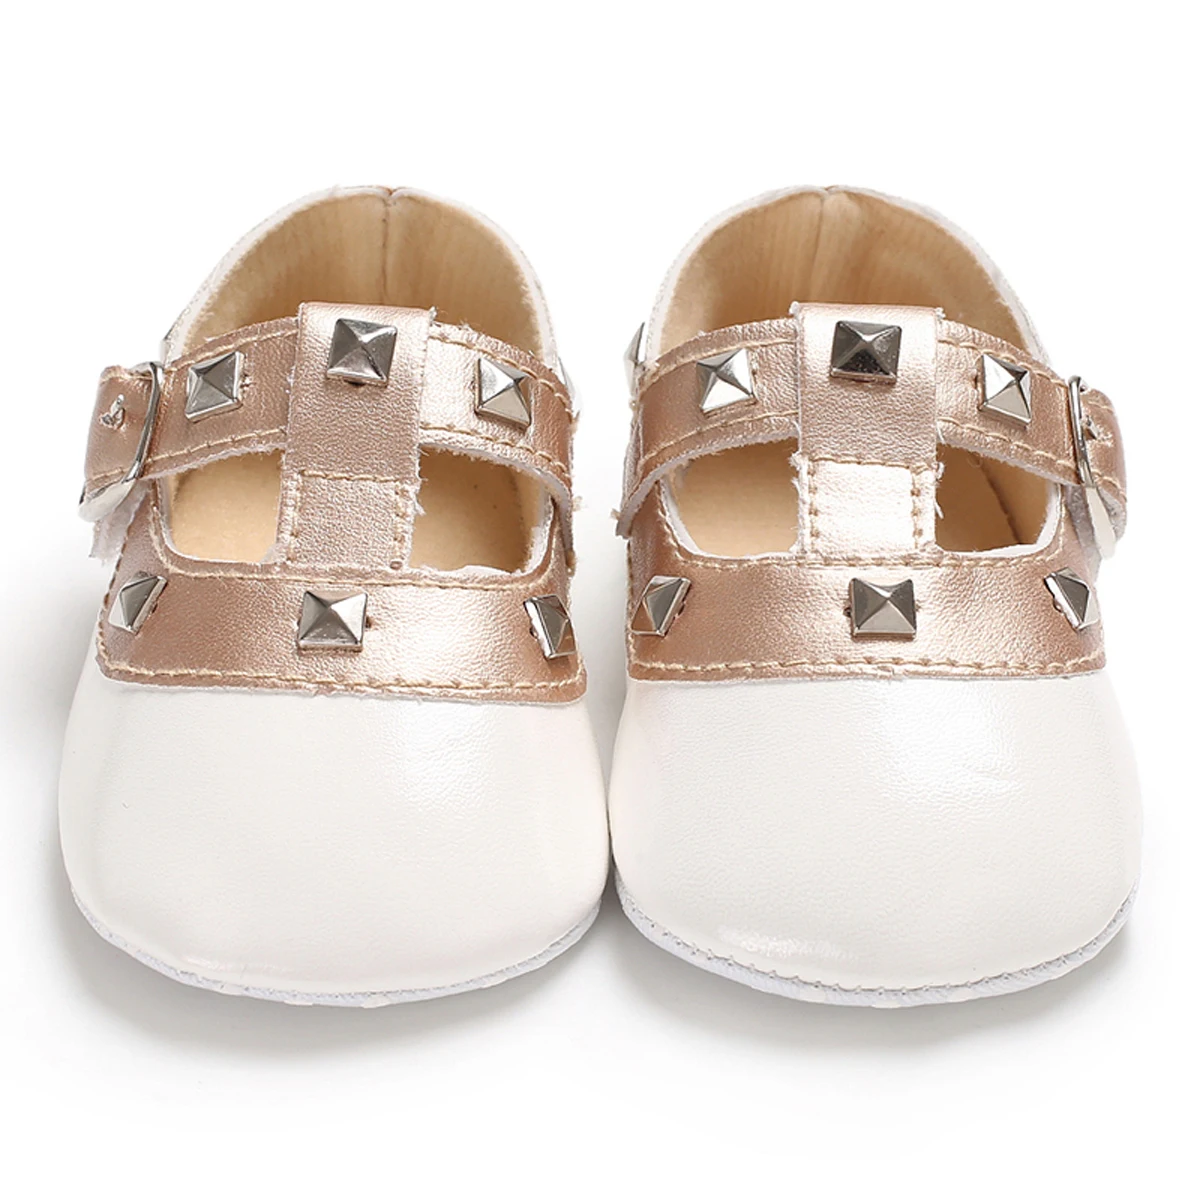 Pudcoco/обувь принцессы с бантом для новорожденных девочек; кожаная однотонная детская обувь на плоской подошве с пряжкой и ремешком; 4 цвета